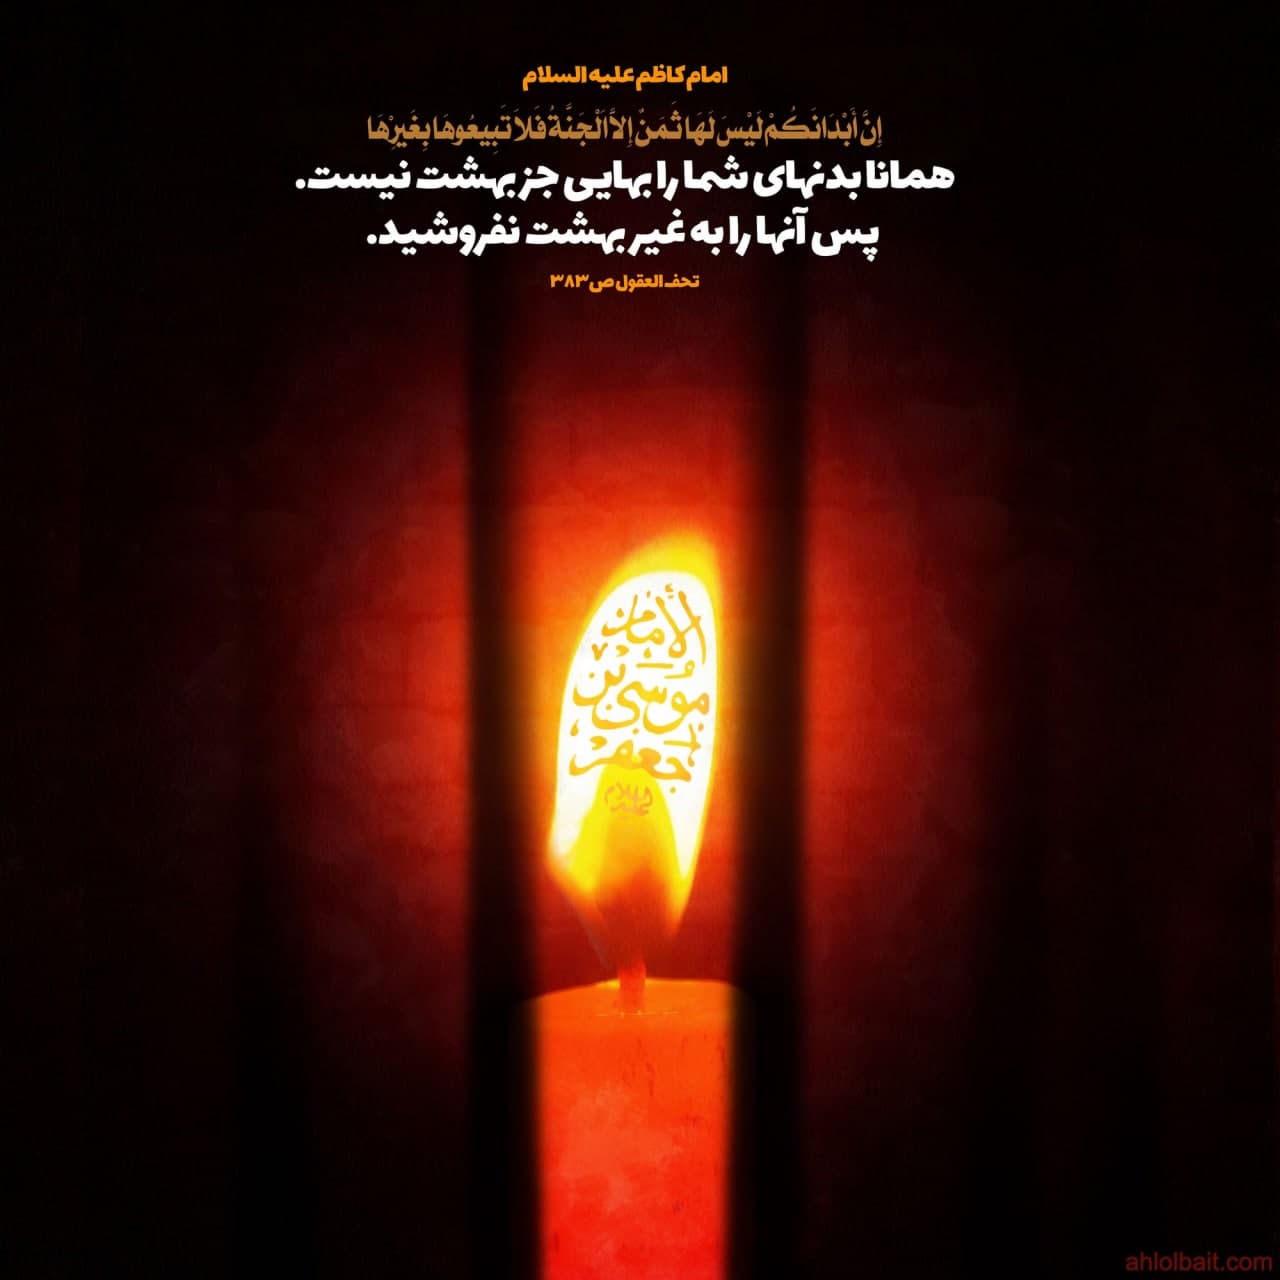 امام کاظم علیه السلام : همانا بدنهای شما را بهایی جز بهشت نیست. پس آنها را به غیر بهشت نفروشید .